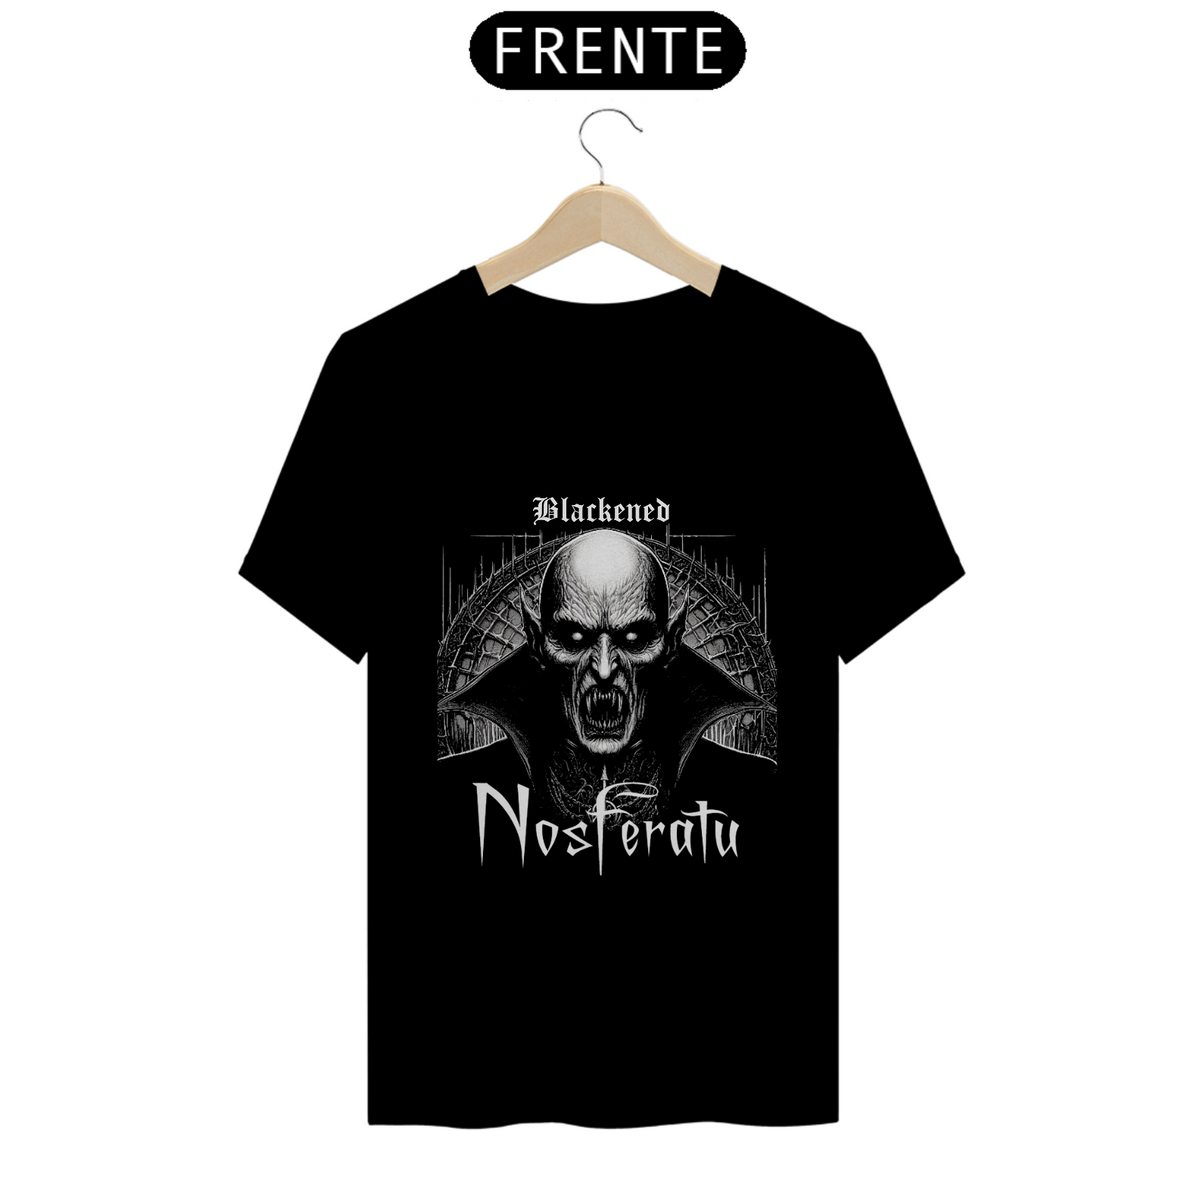 Nome do produto: Nosferatu 